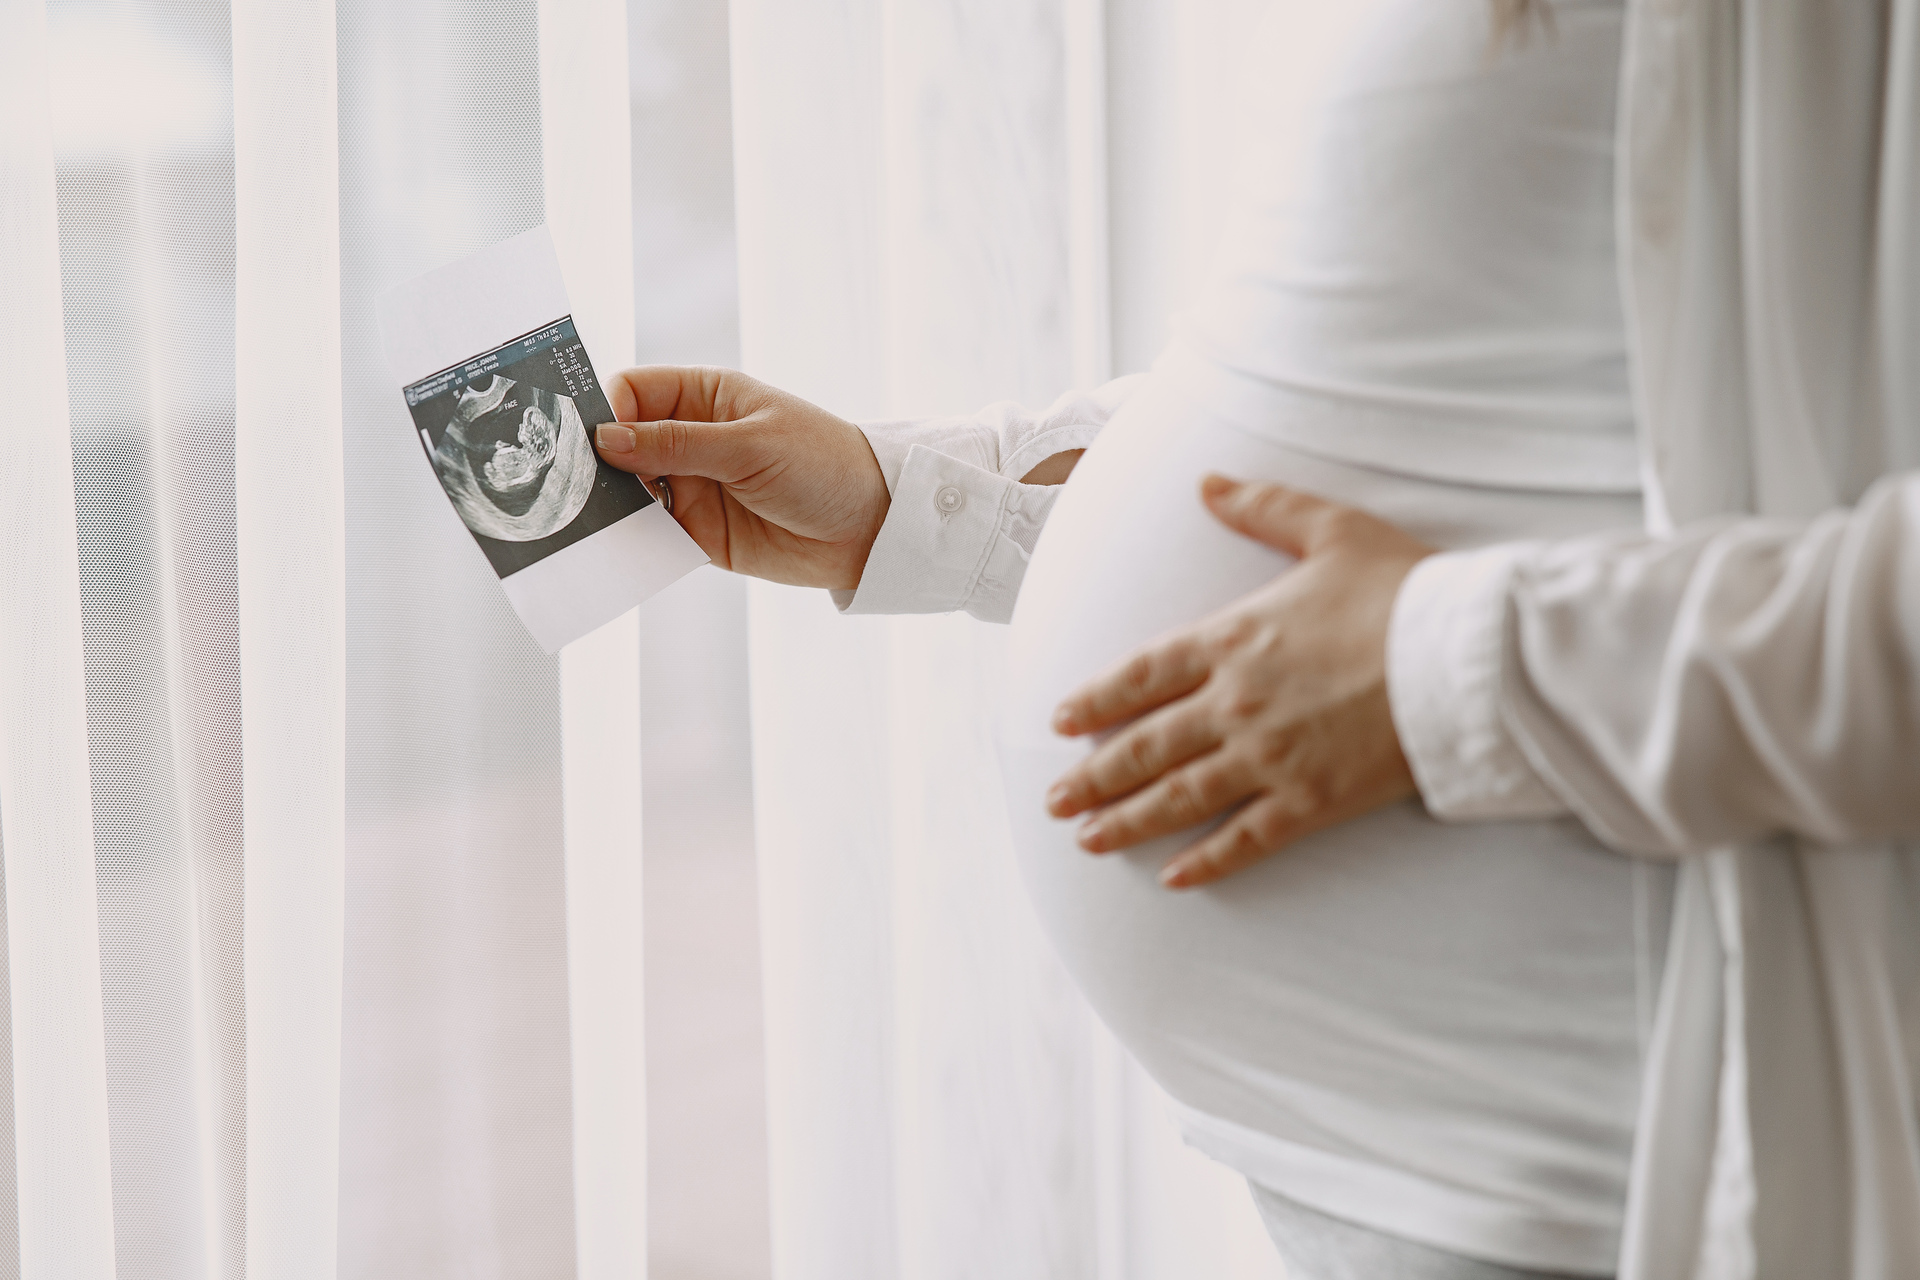 Женщины, худеющие на Оземпике, рассказали о внеплановой беременности